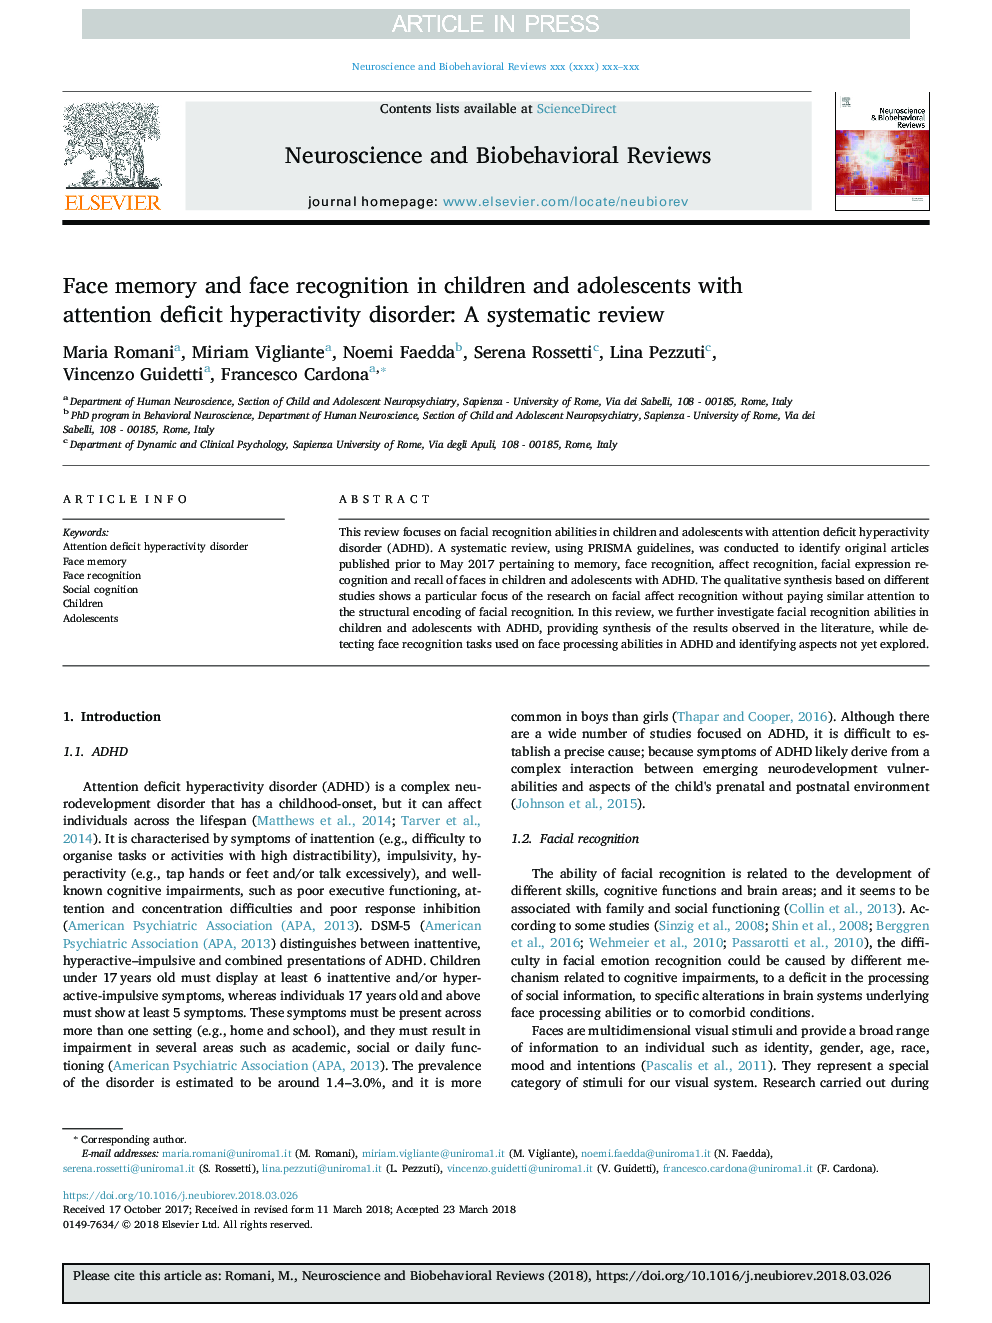 حافظه و تشخیص چهره در کودکان و نوجوانان مبتلا به اختلال بیش فعالی کمبود توجه: بررسی سیستماتیک 